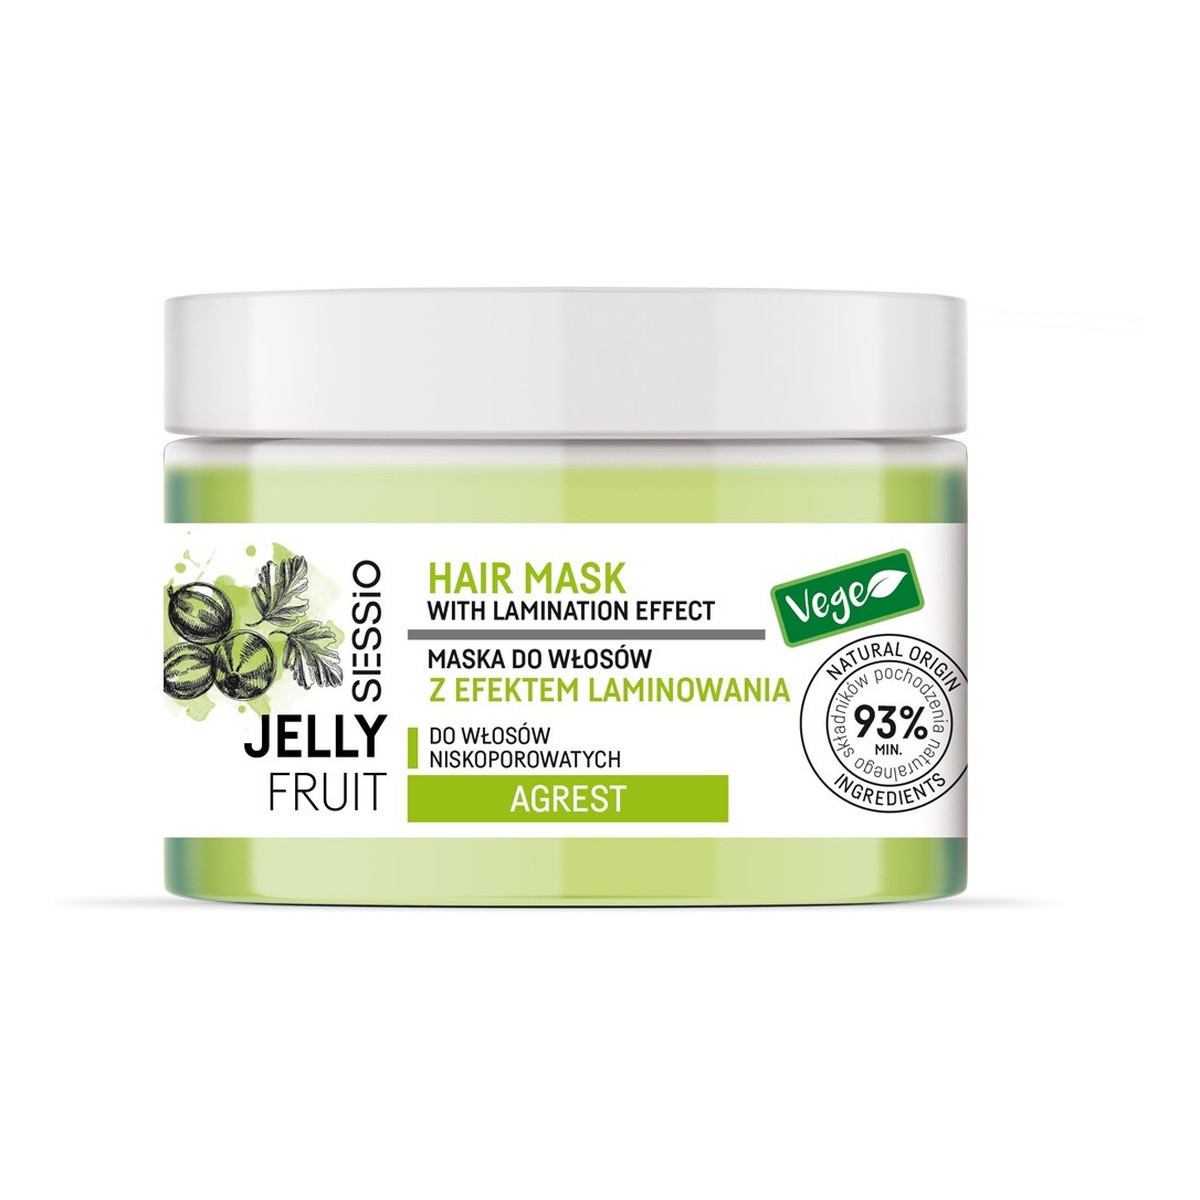 Sessio Jelly Fruit Maska do włosów z efektem laminowania Agrest - do włosów niskoporowatych 250g